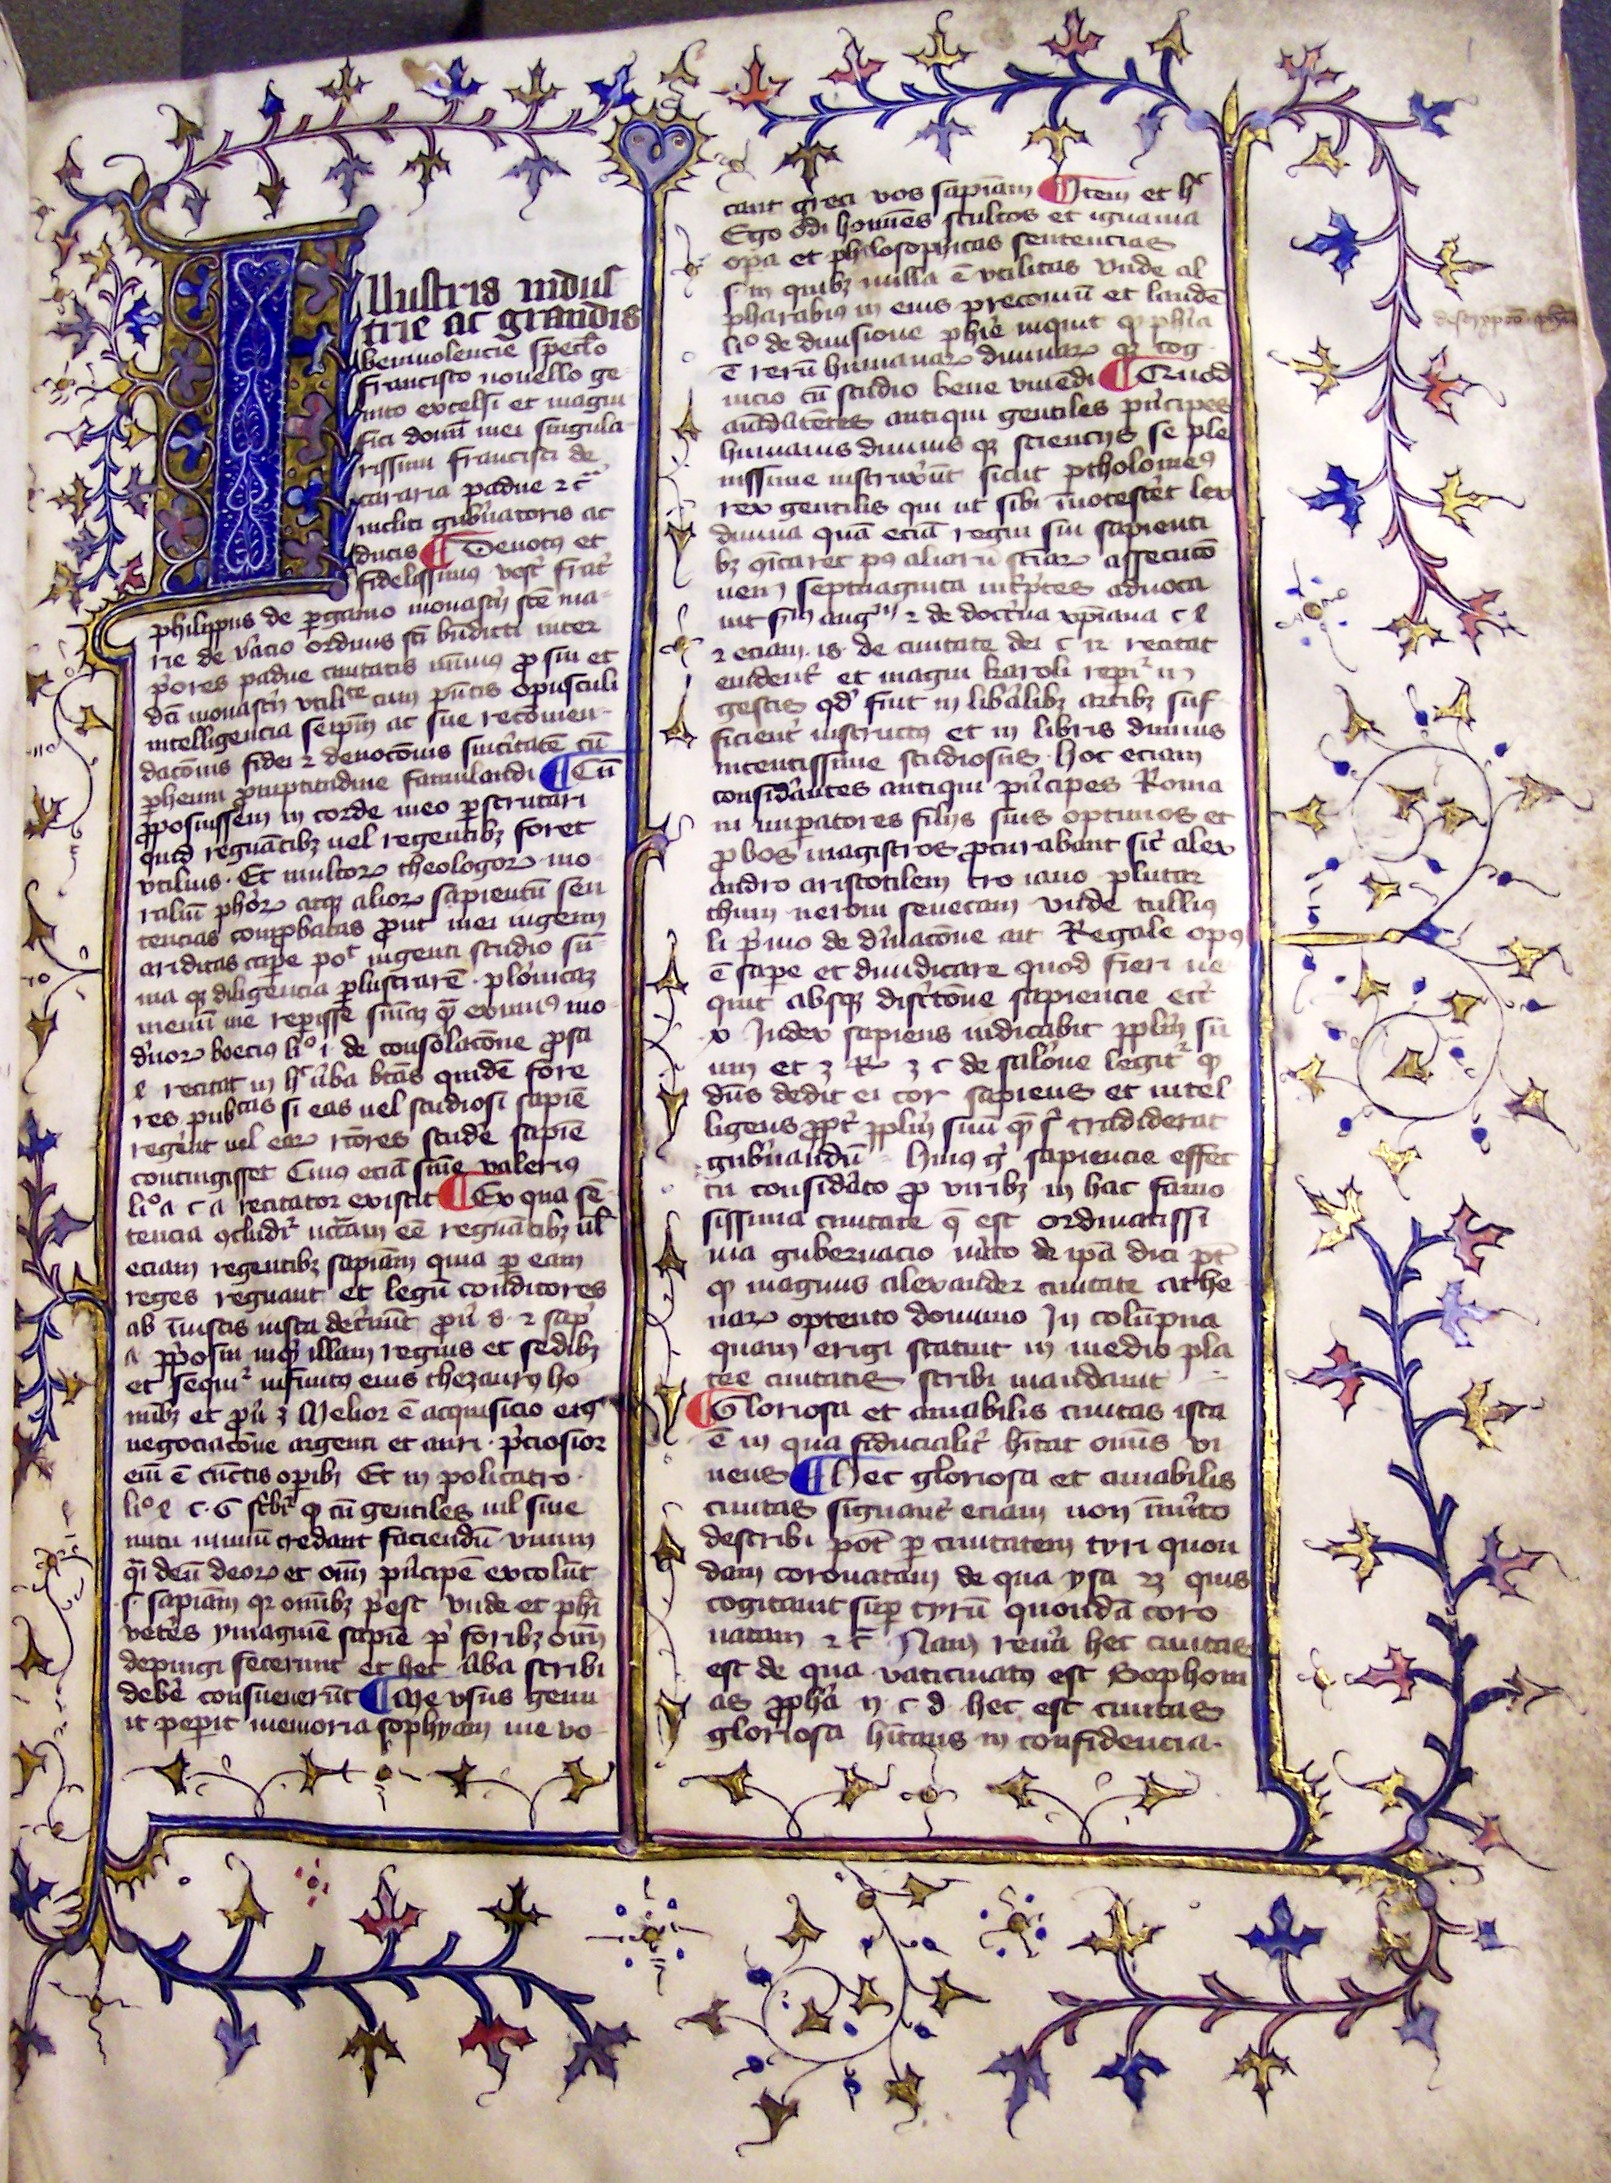 MS 154, f1r, Philippi de Pergamo: Speculum regiminis... , 15thC